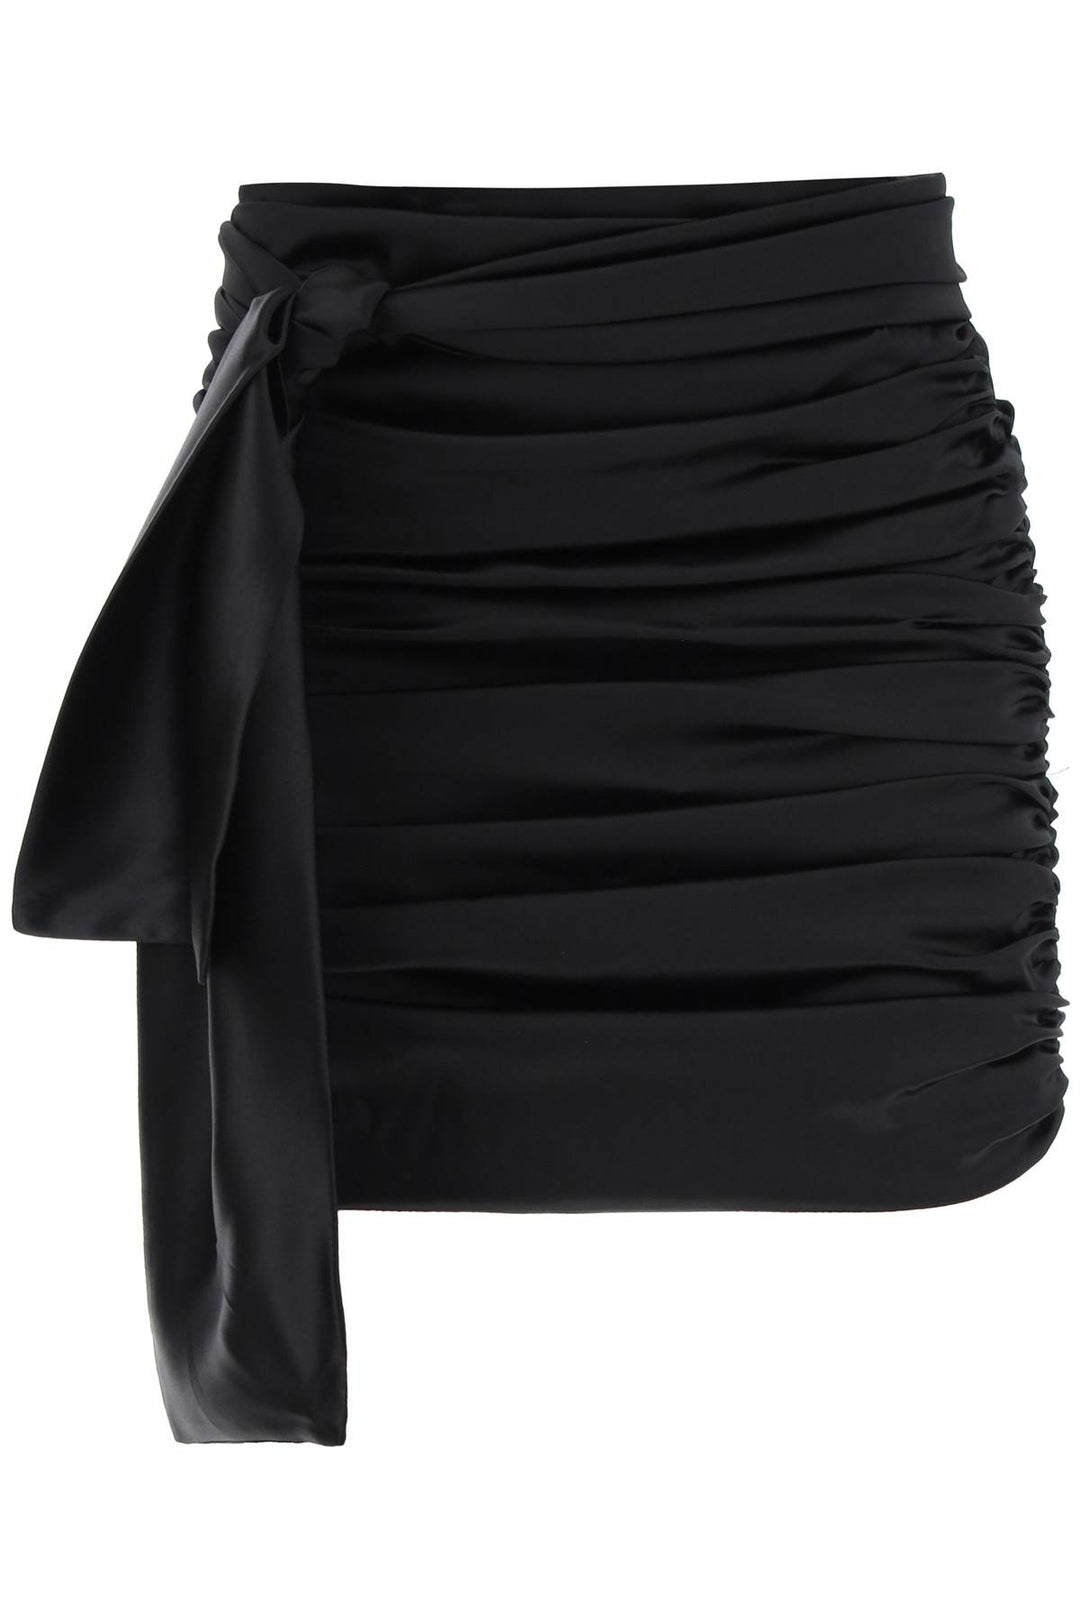 Dolce & Gabbana Ruched Satin Mini Skirt   Nero